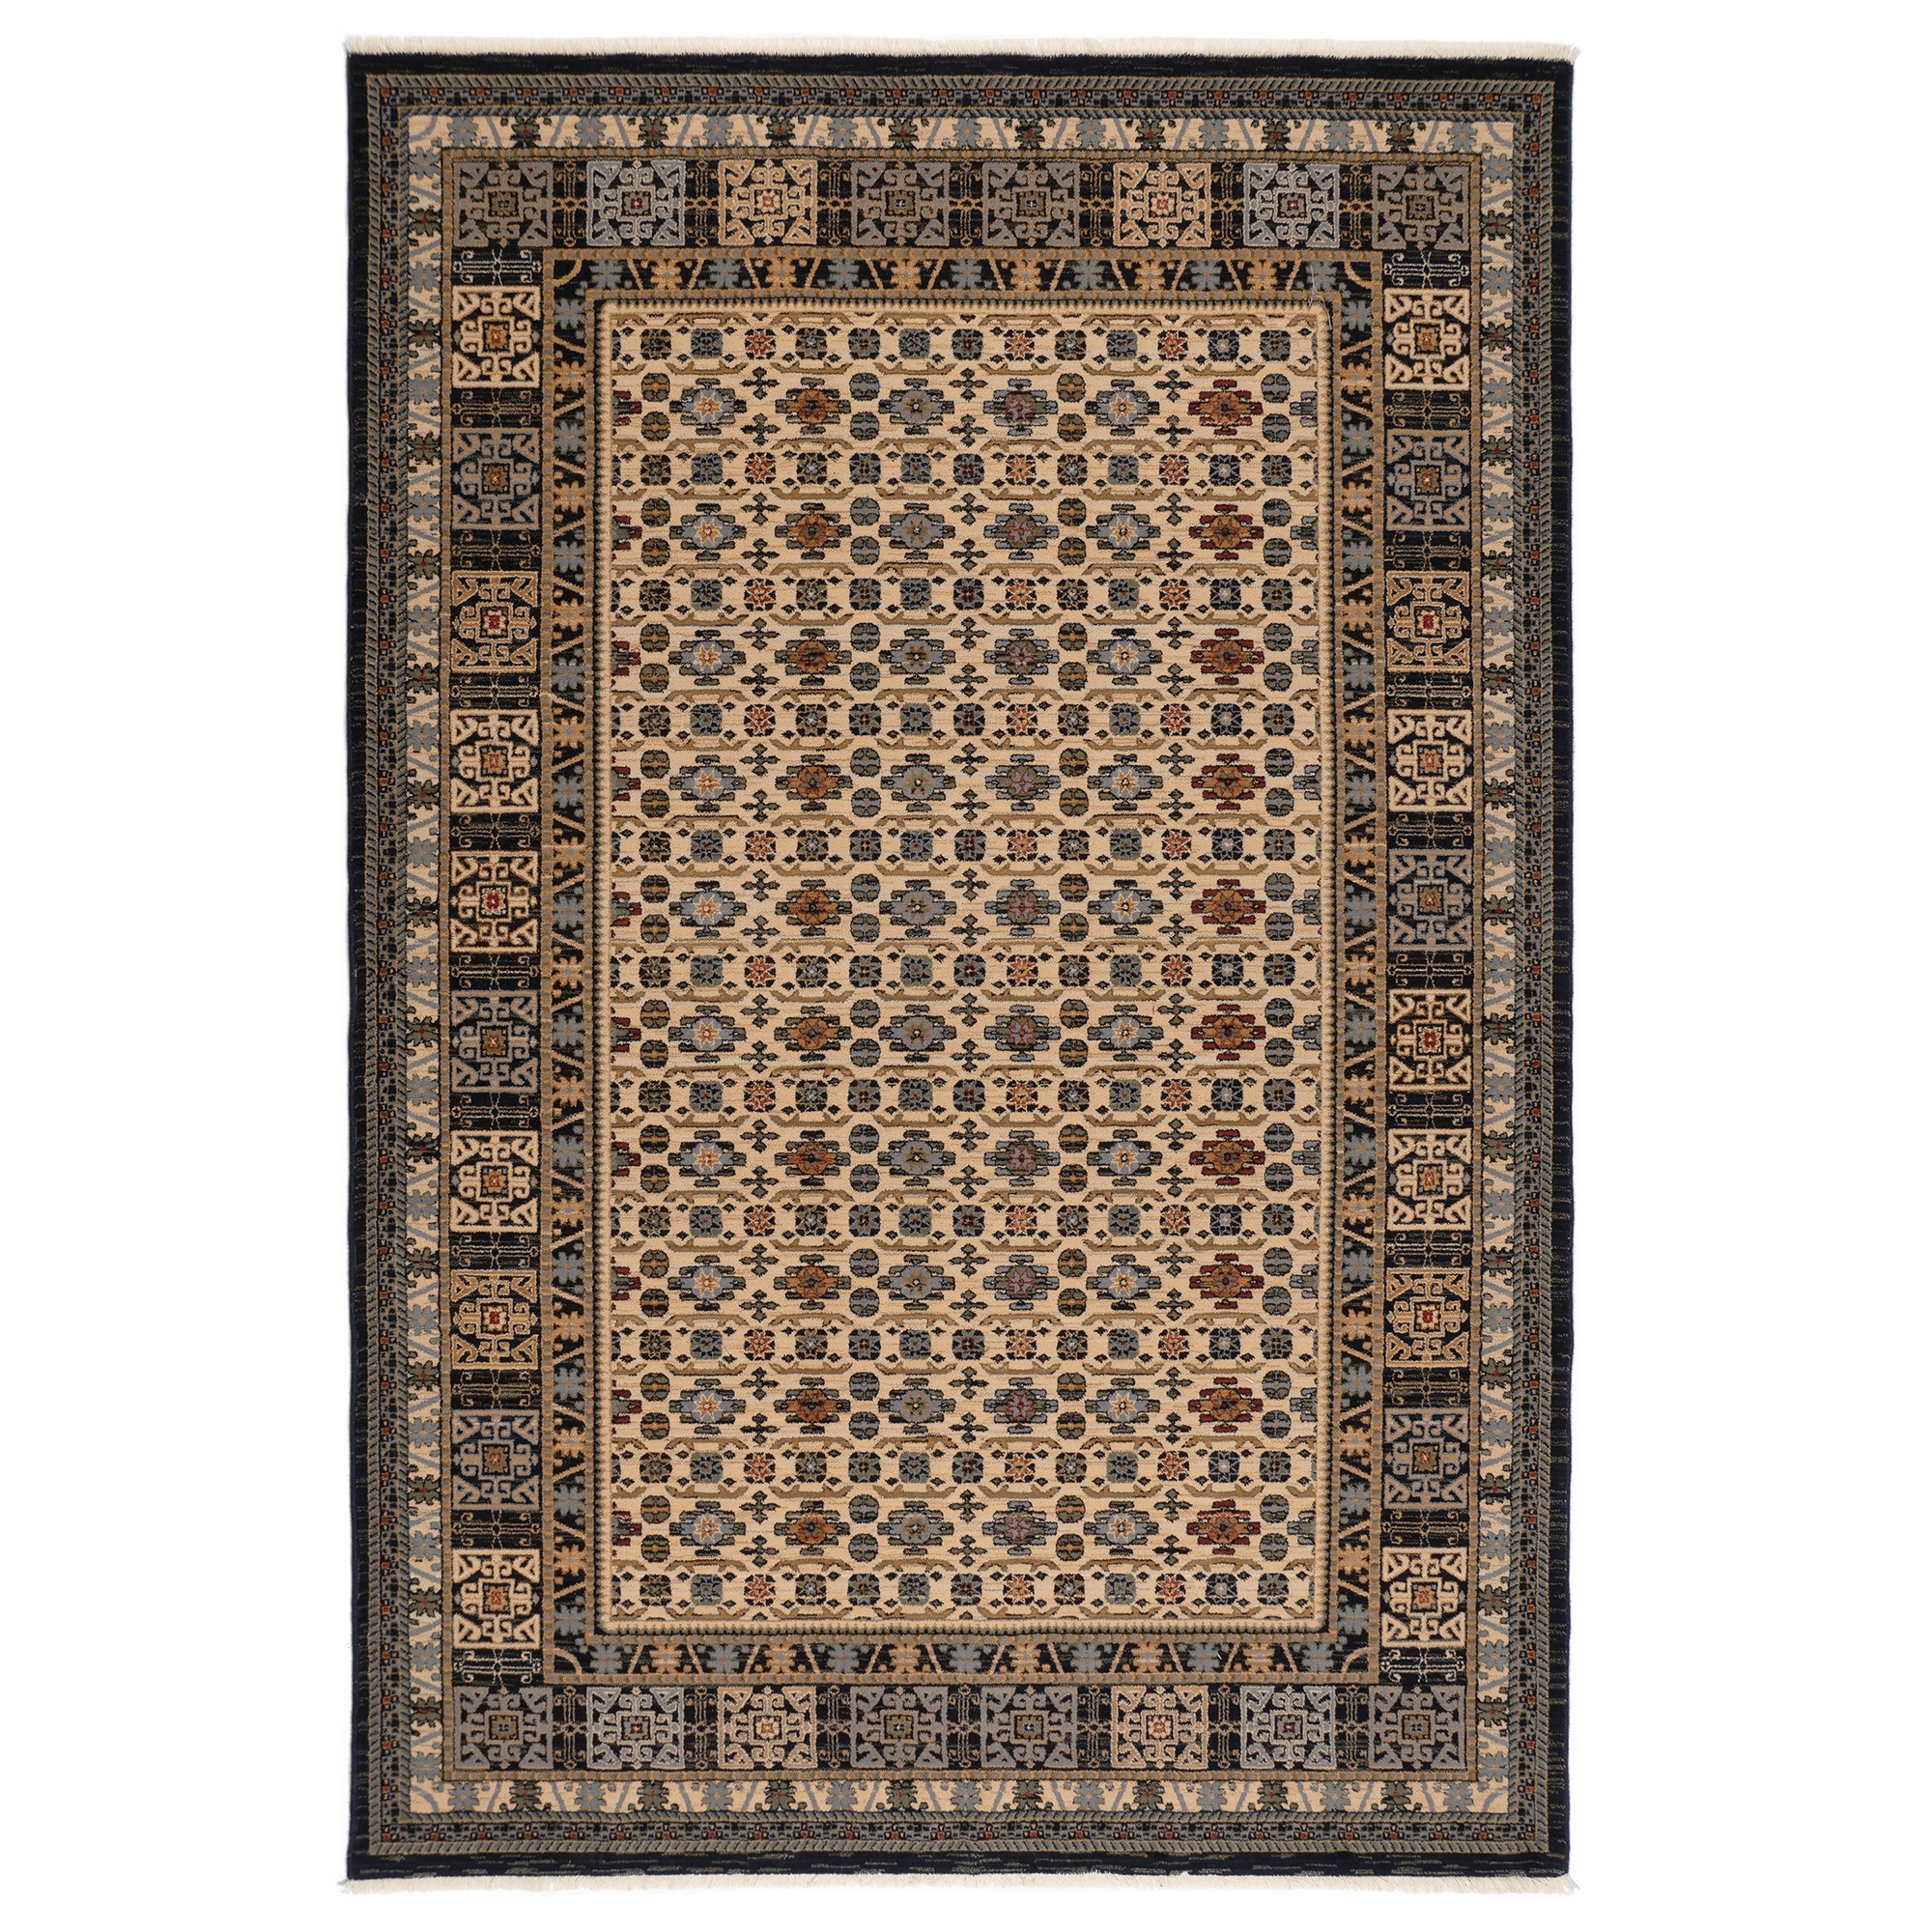 Covor living / dormitor Carpeta Antique 64281-53551, 80 x 145 cm, lana, maro + bej + albastru, dreptunghiular